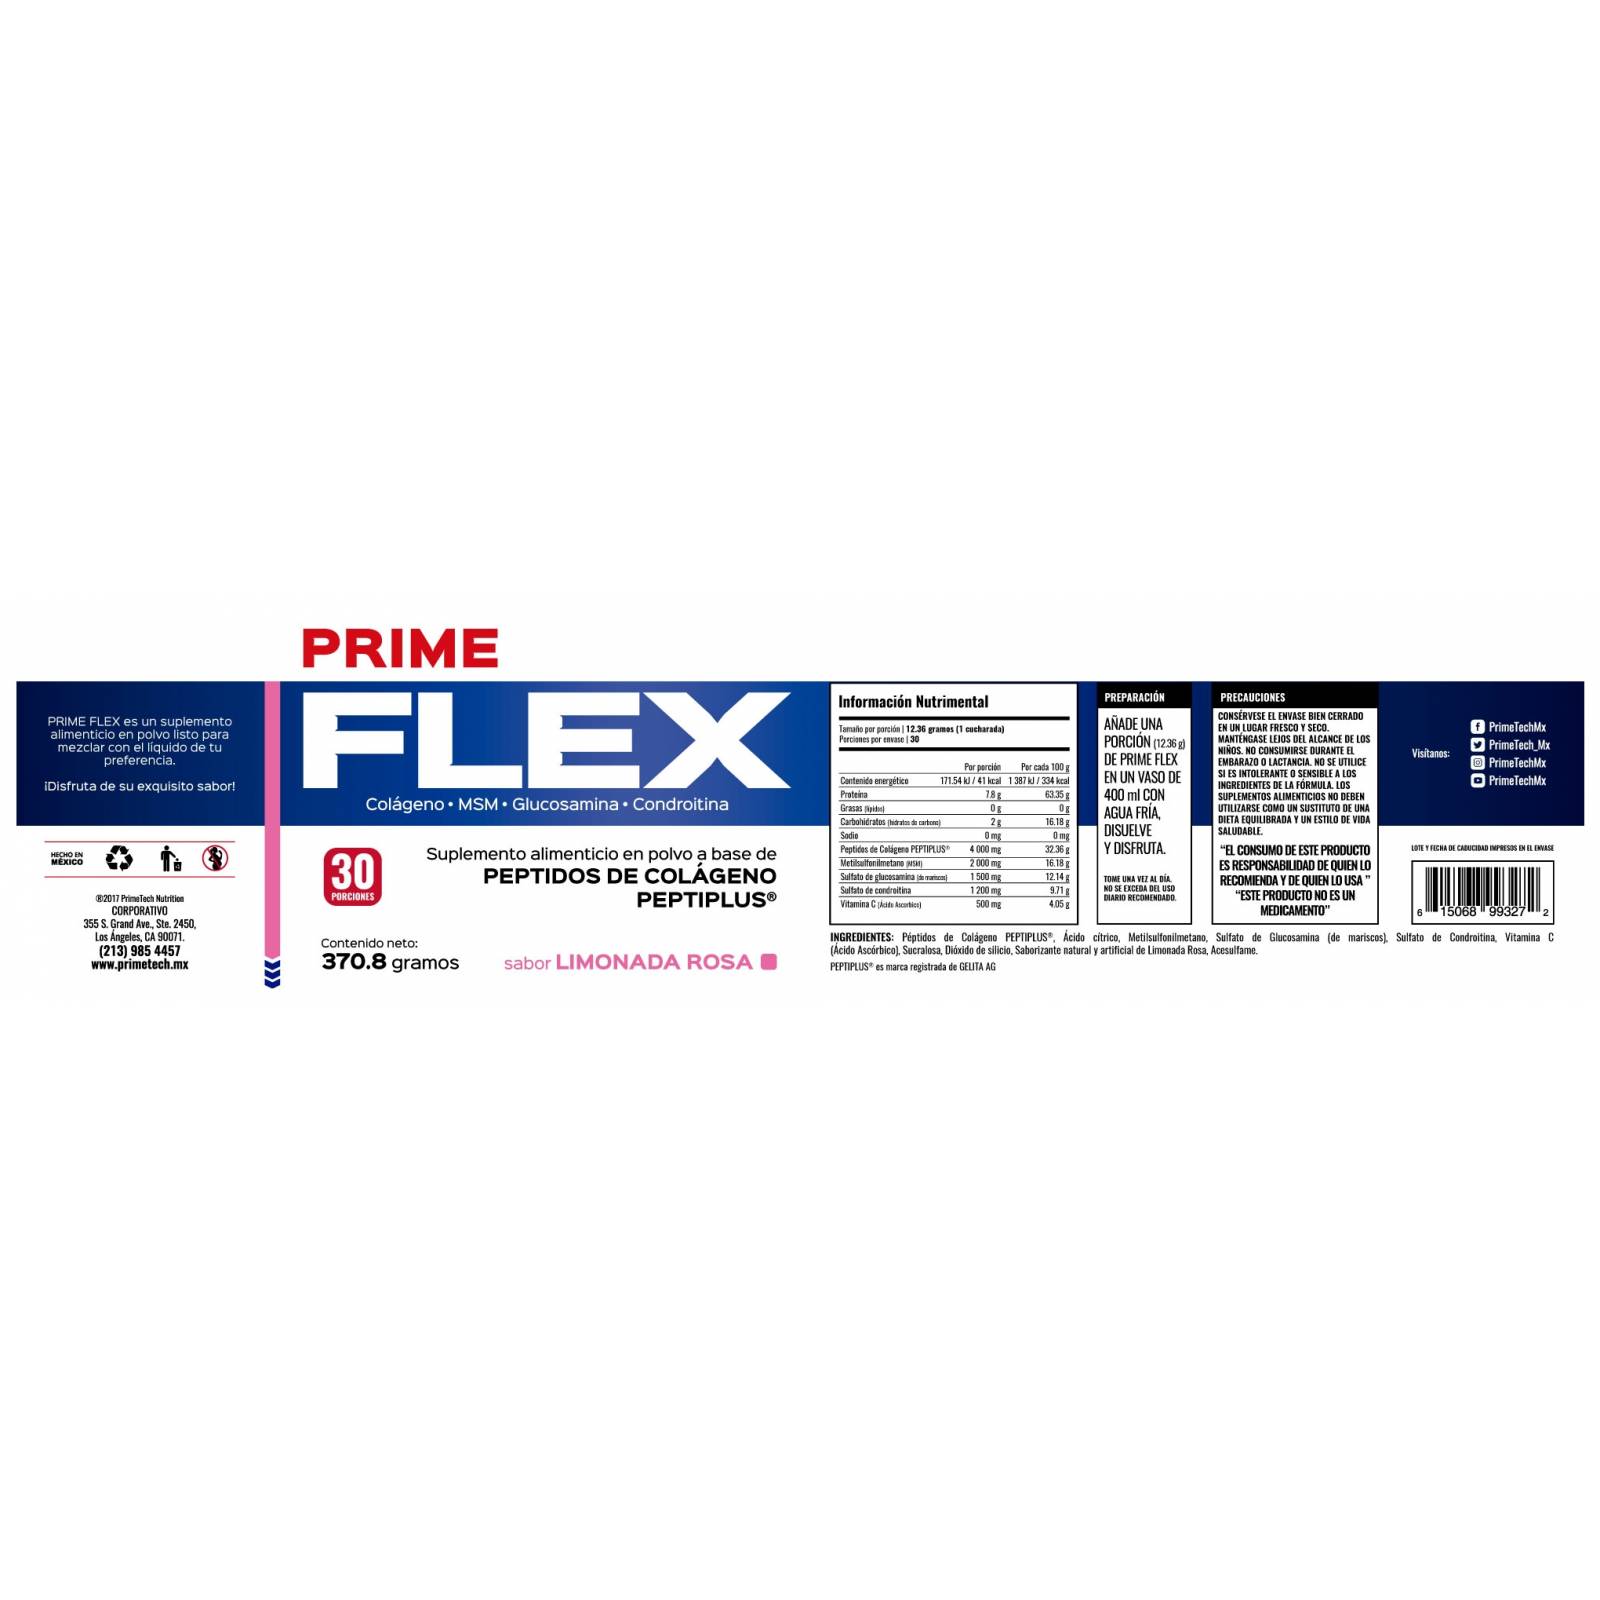 FLEX protector de articulaciones Limonada Rosa Primetech 30 serv 12.36 g c/u